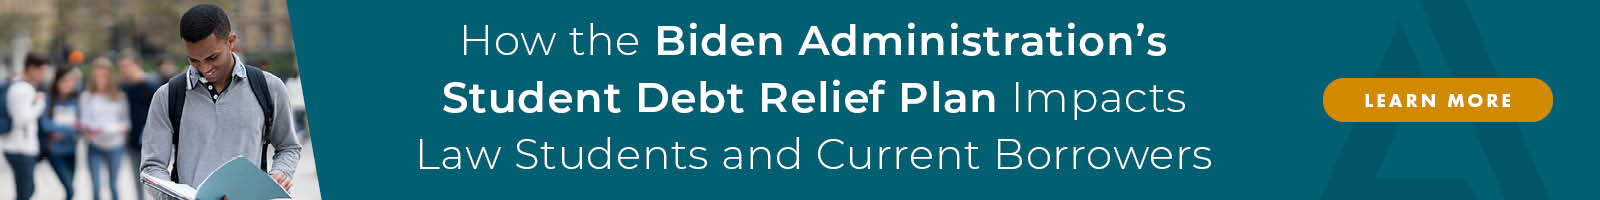 Biden Debt Relief Impact